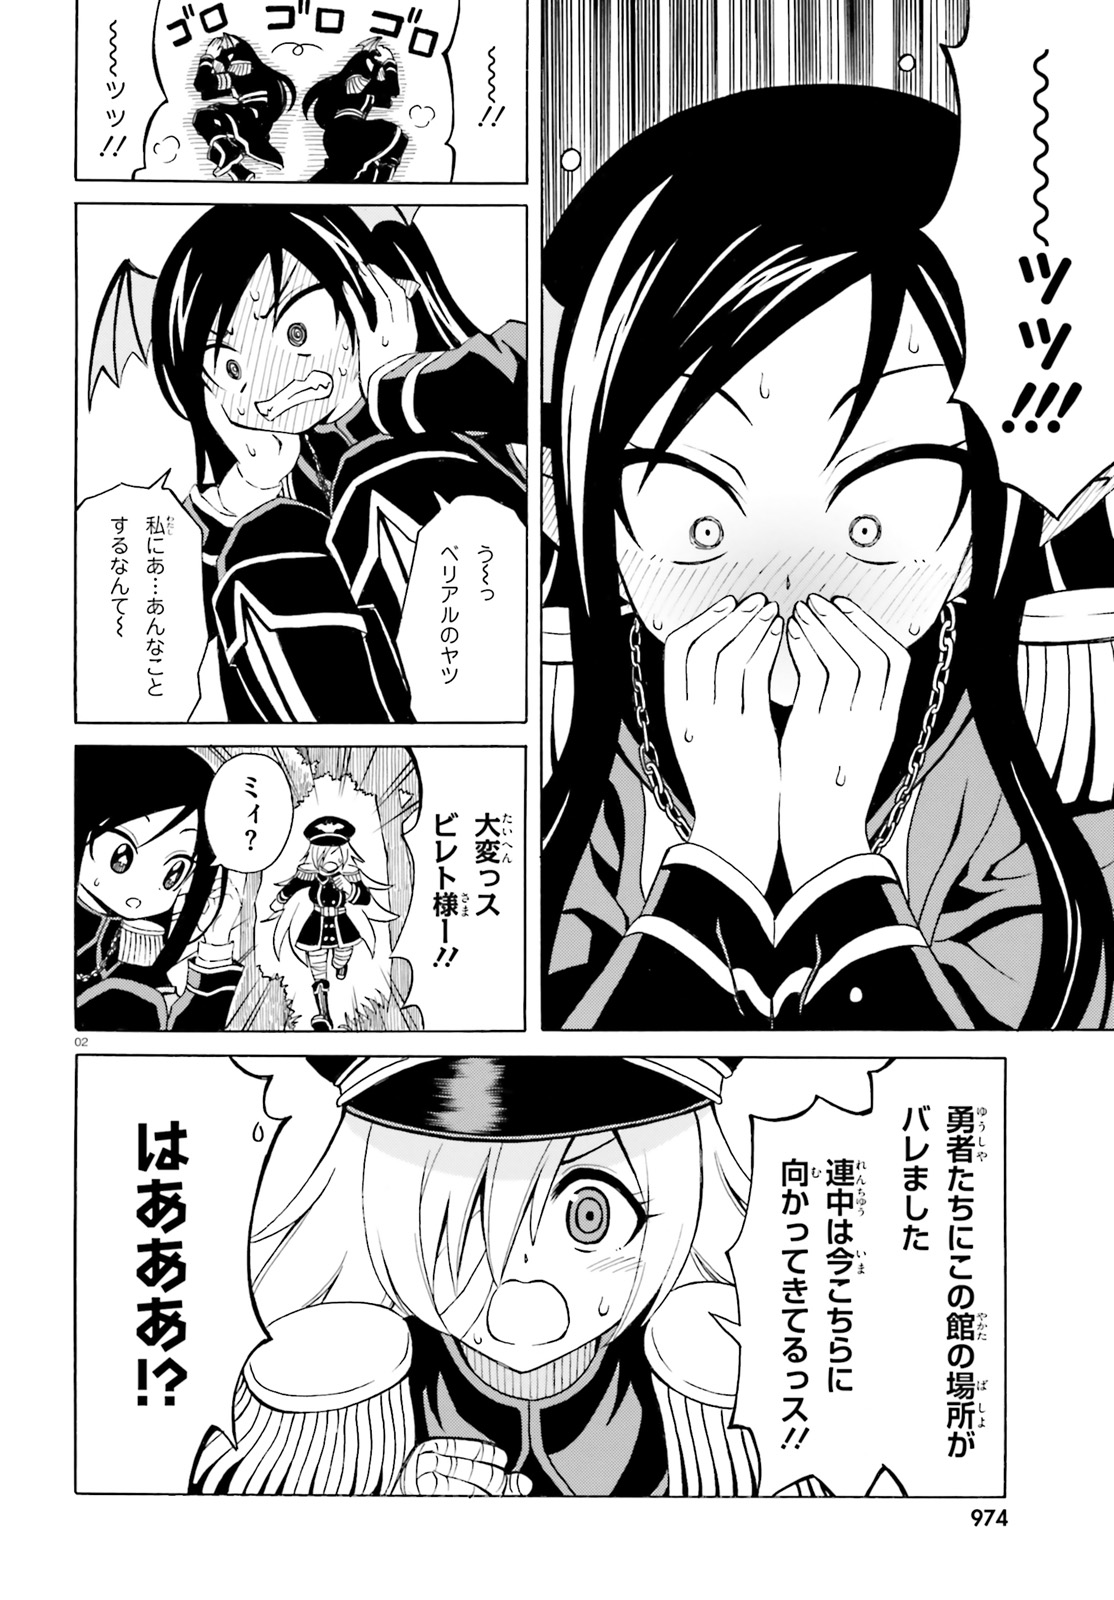 Beriaru-sama wa Shitenno no Naka Demo × × - Chapter 12 - Page 2